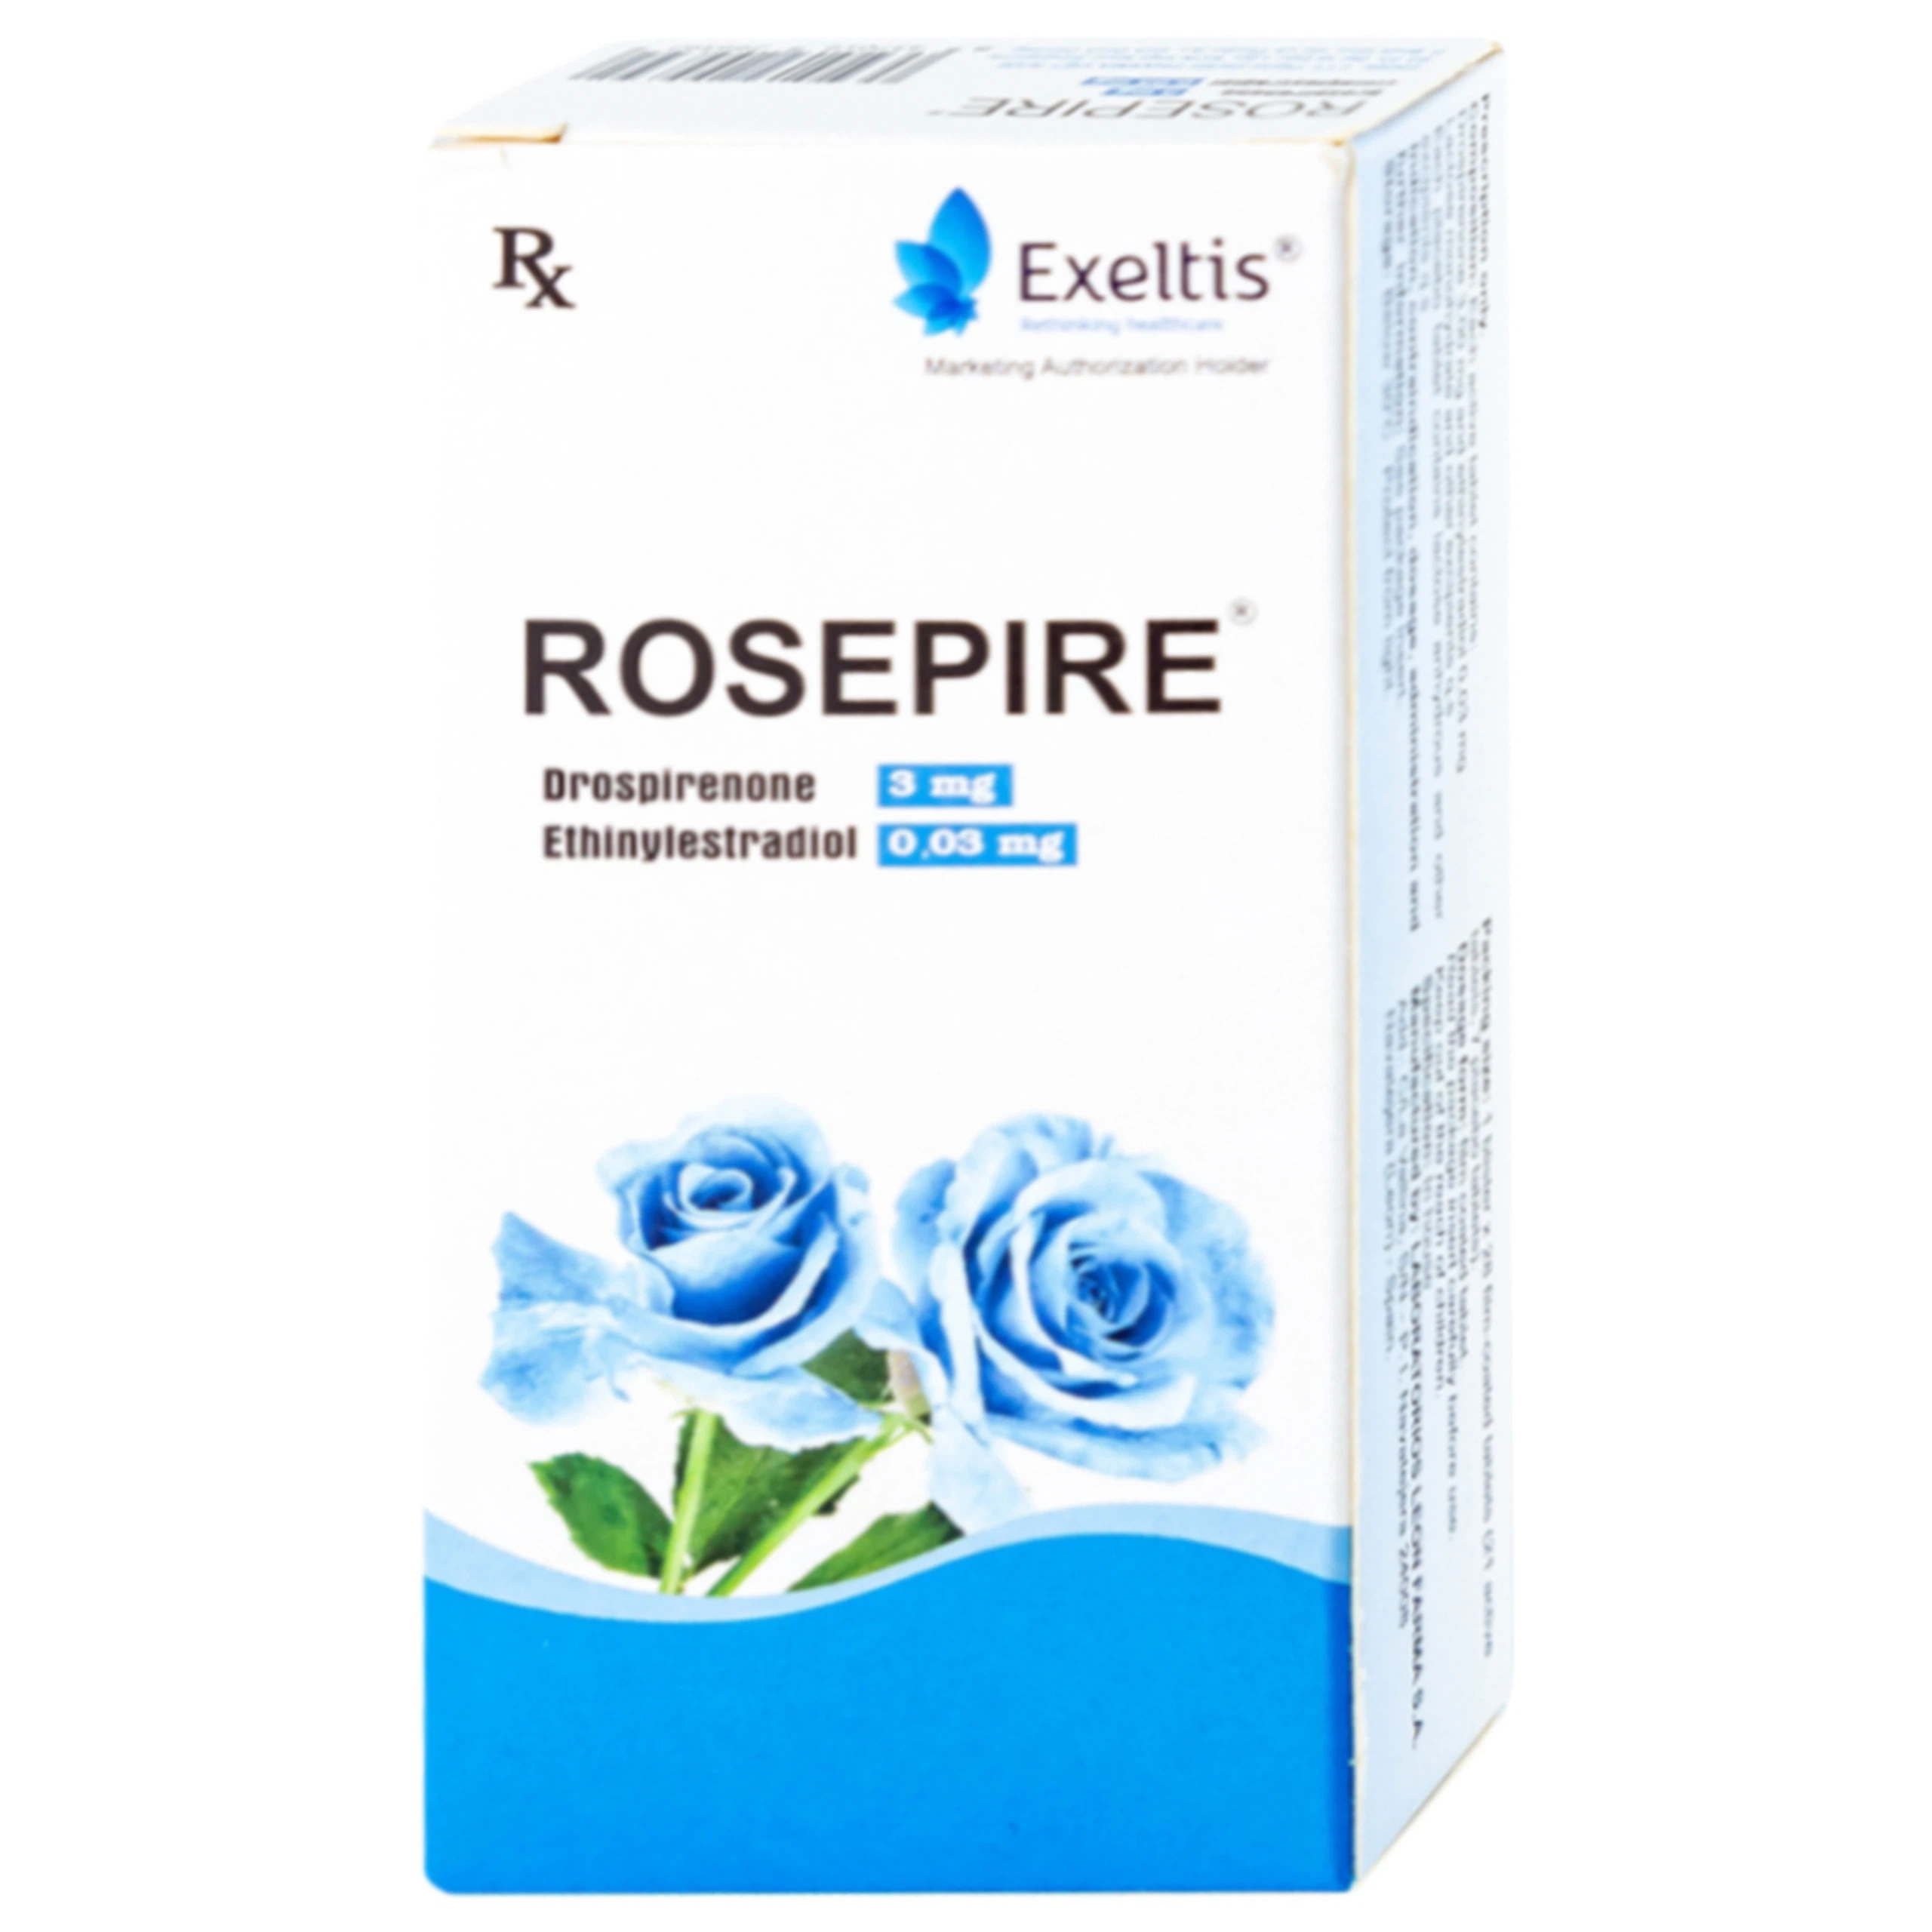 Thuốc Rosepire 3mg/0,03mg Exeltis xanh dùng để tránh thai (1 vỉ x 28 viên)